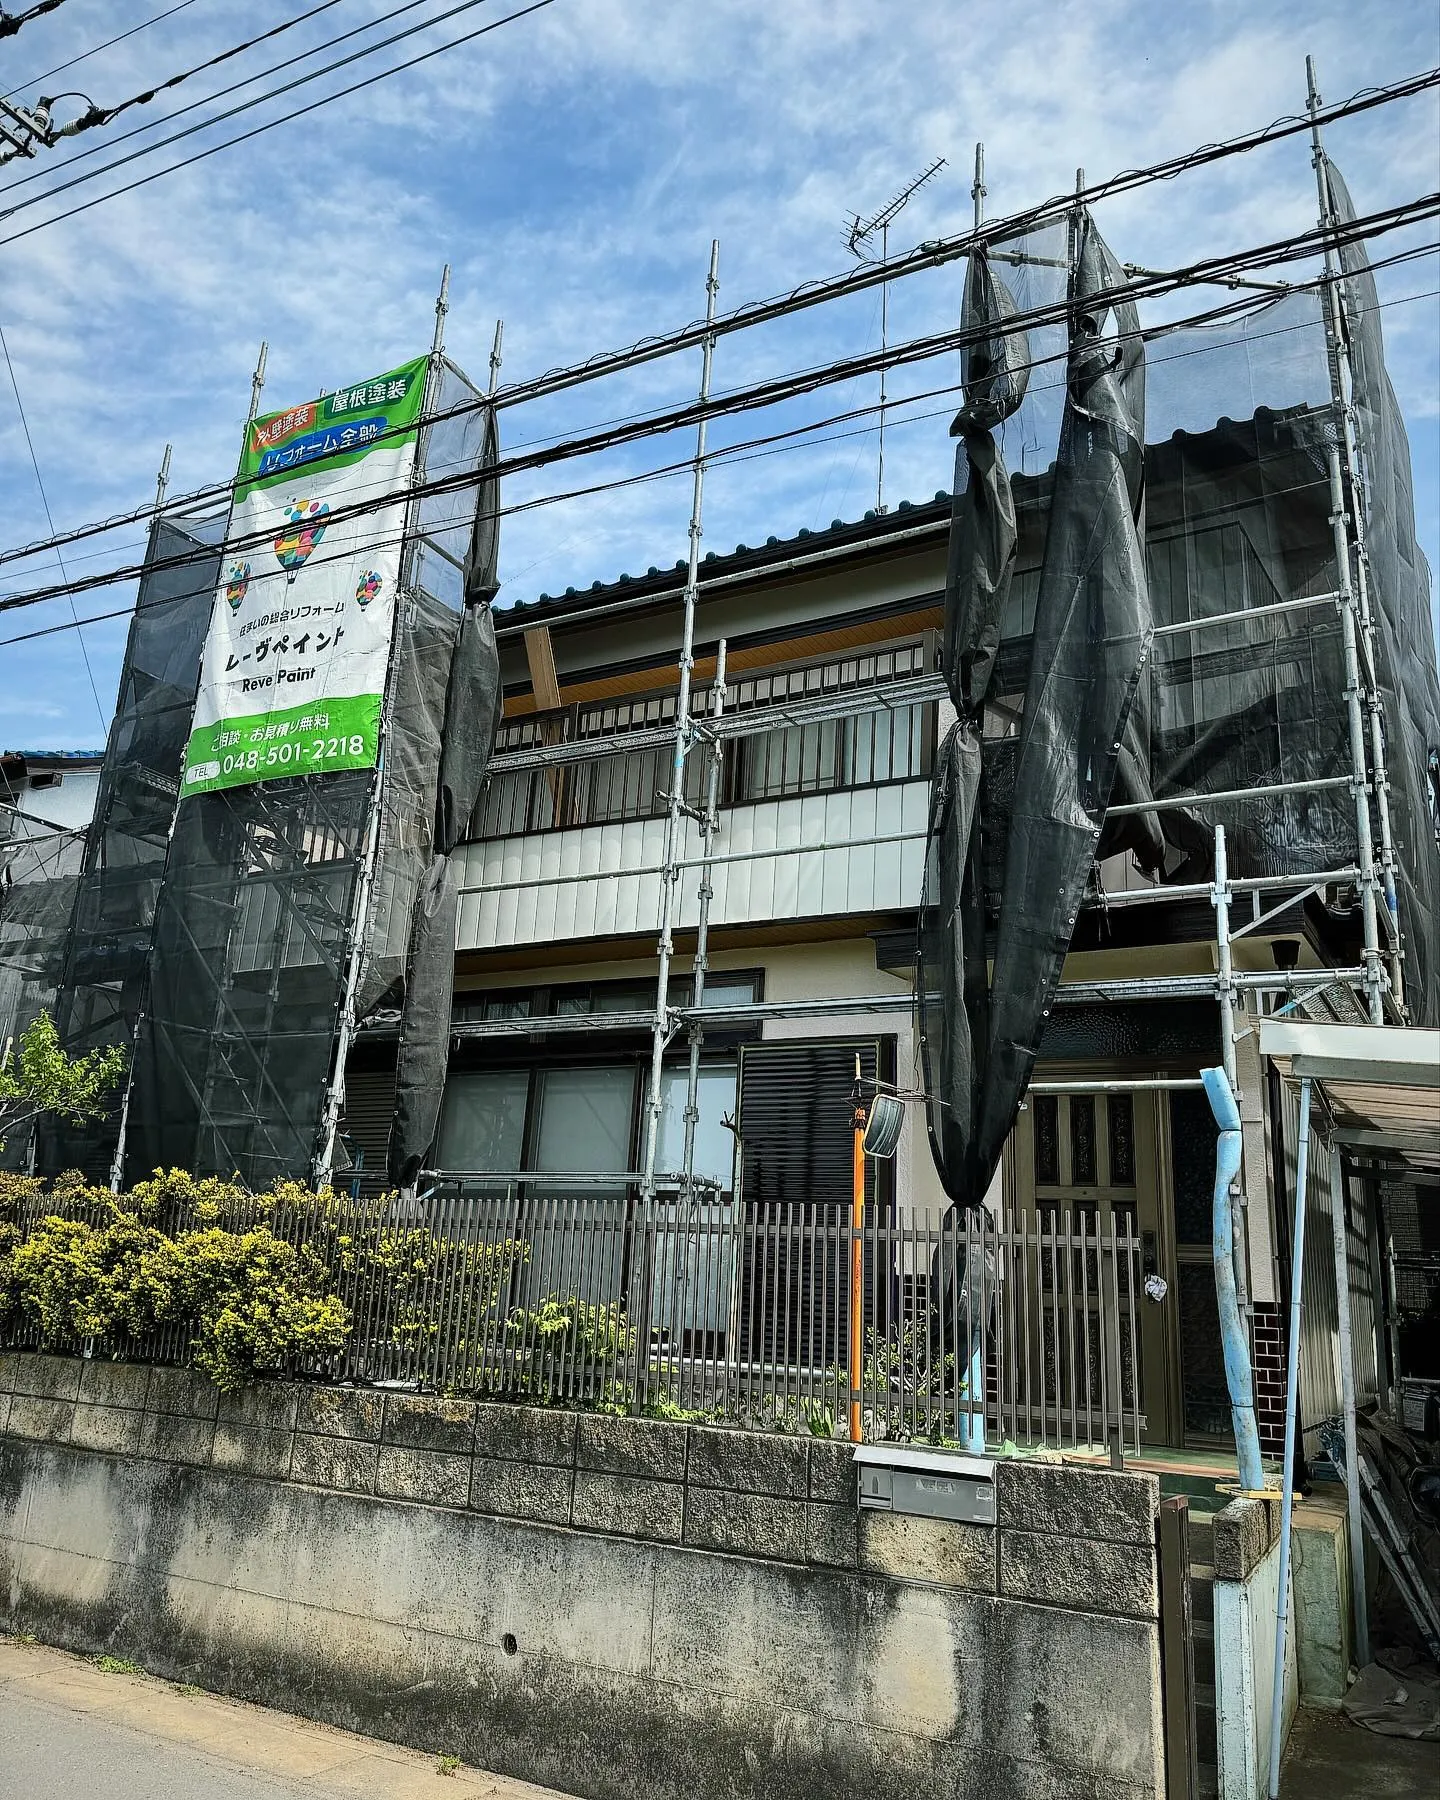 埼玉県鴻巣市M様邸での外壁塗装が進行中です✨🏠✨